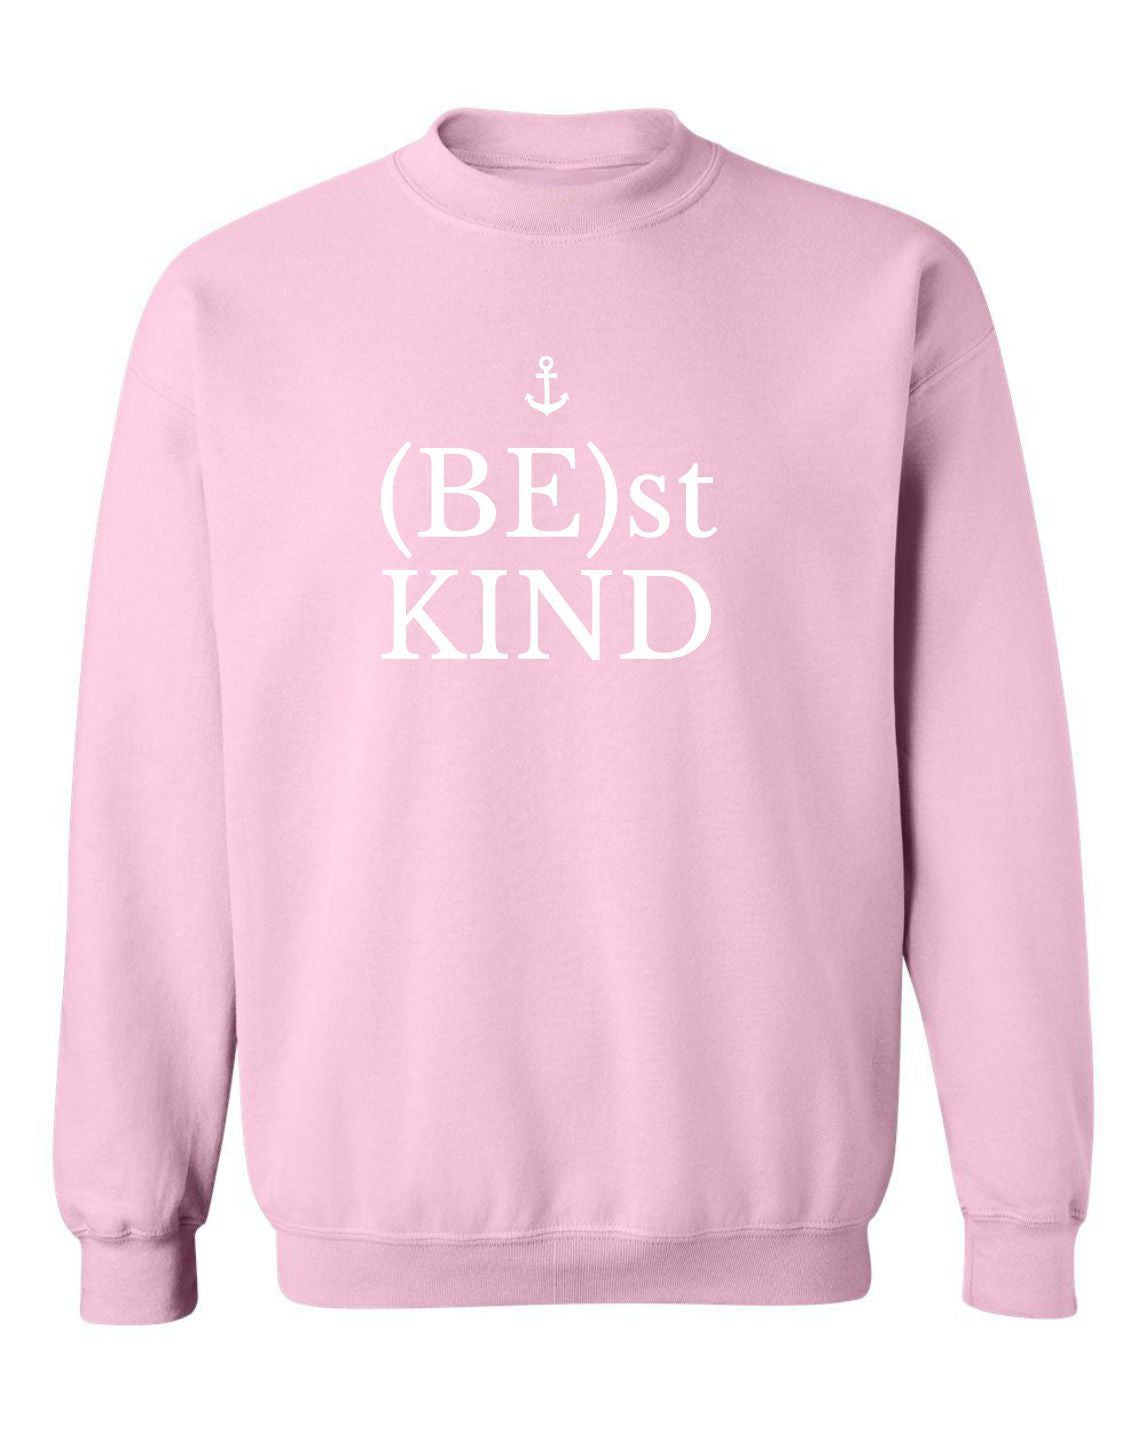 "Be(st) Kind" Unisex Crewneck Sweatshirt